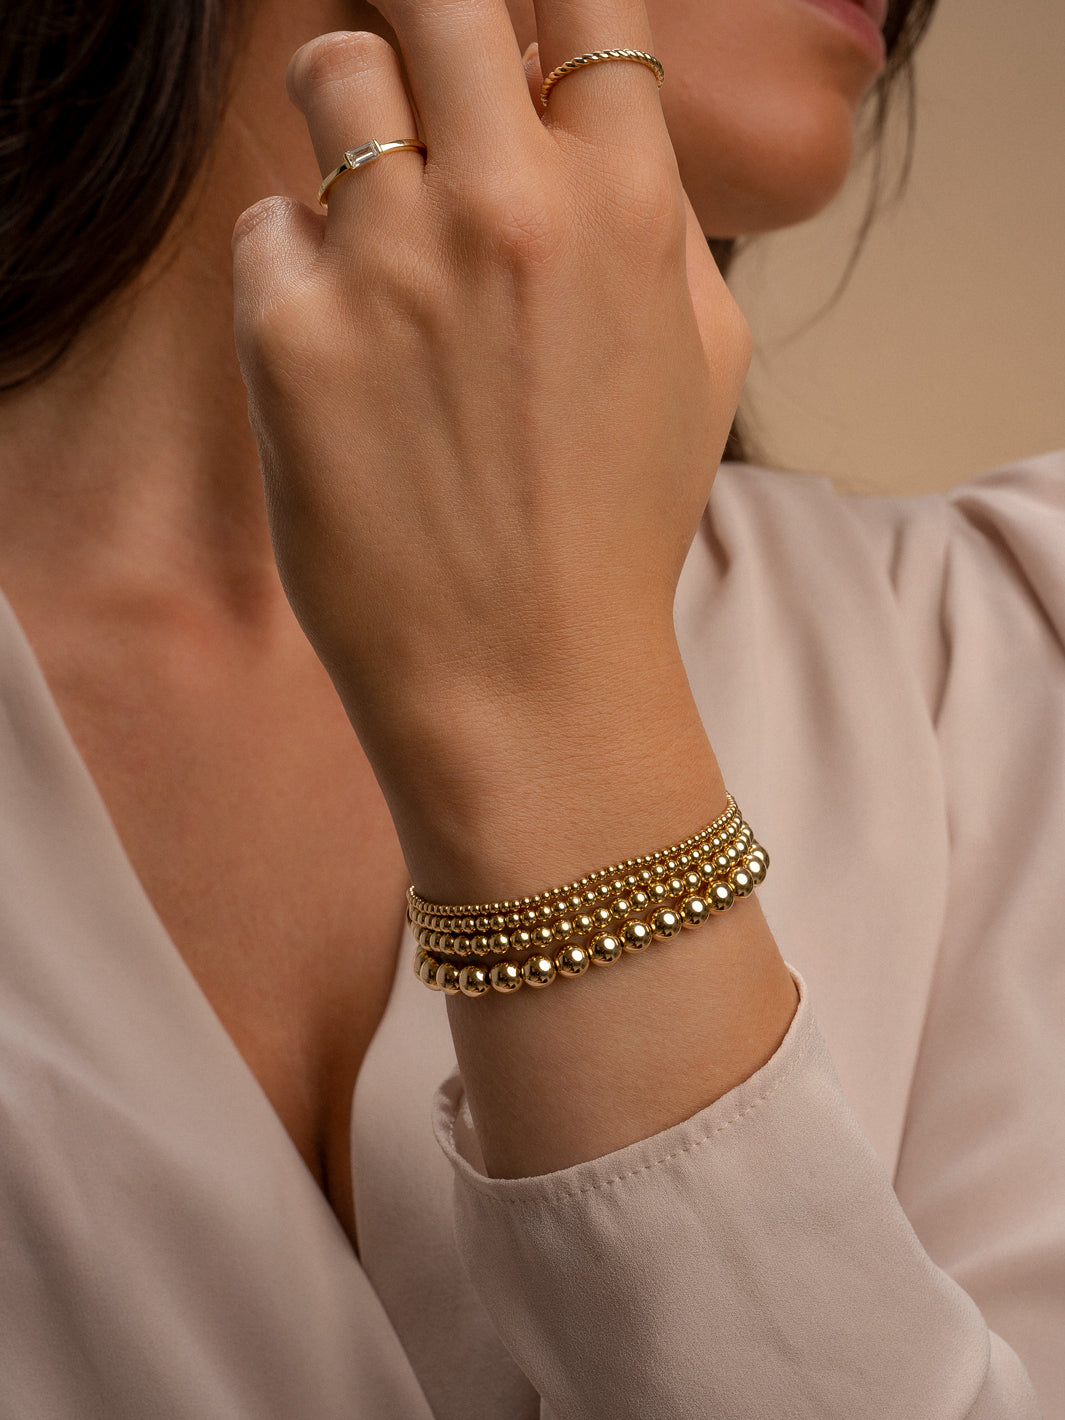 gouden armbanden met kralen voor vrouwen